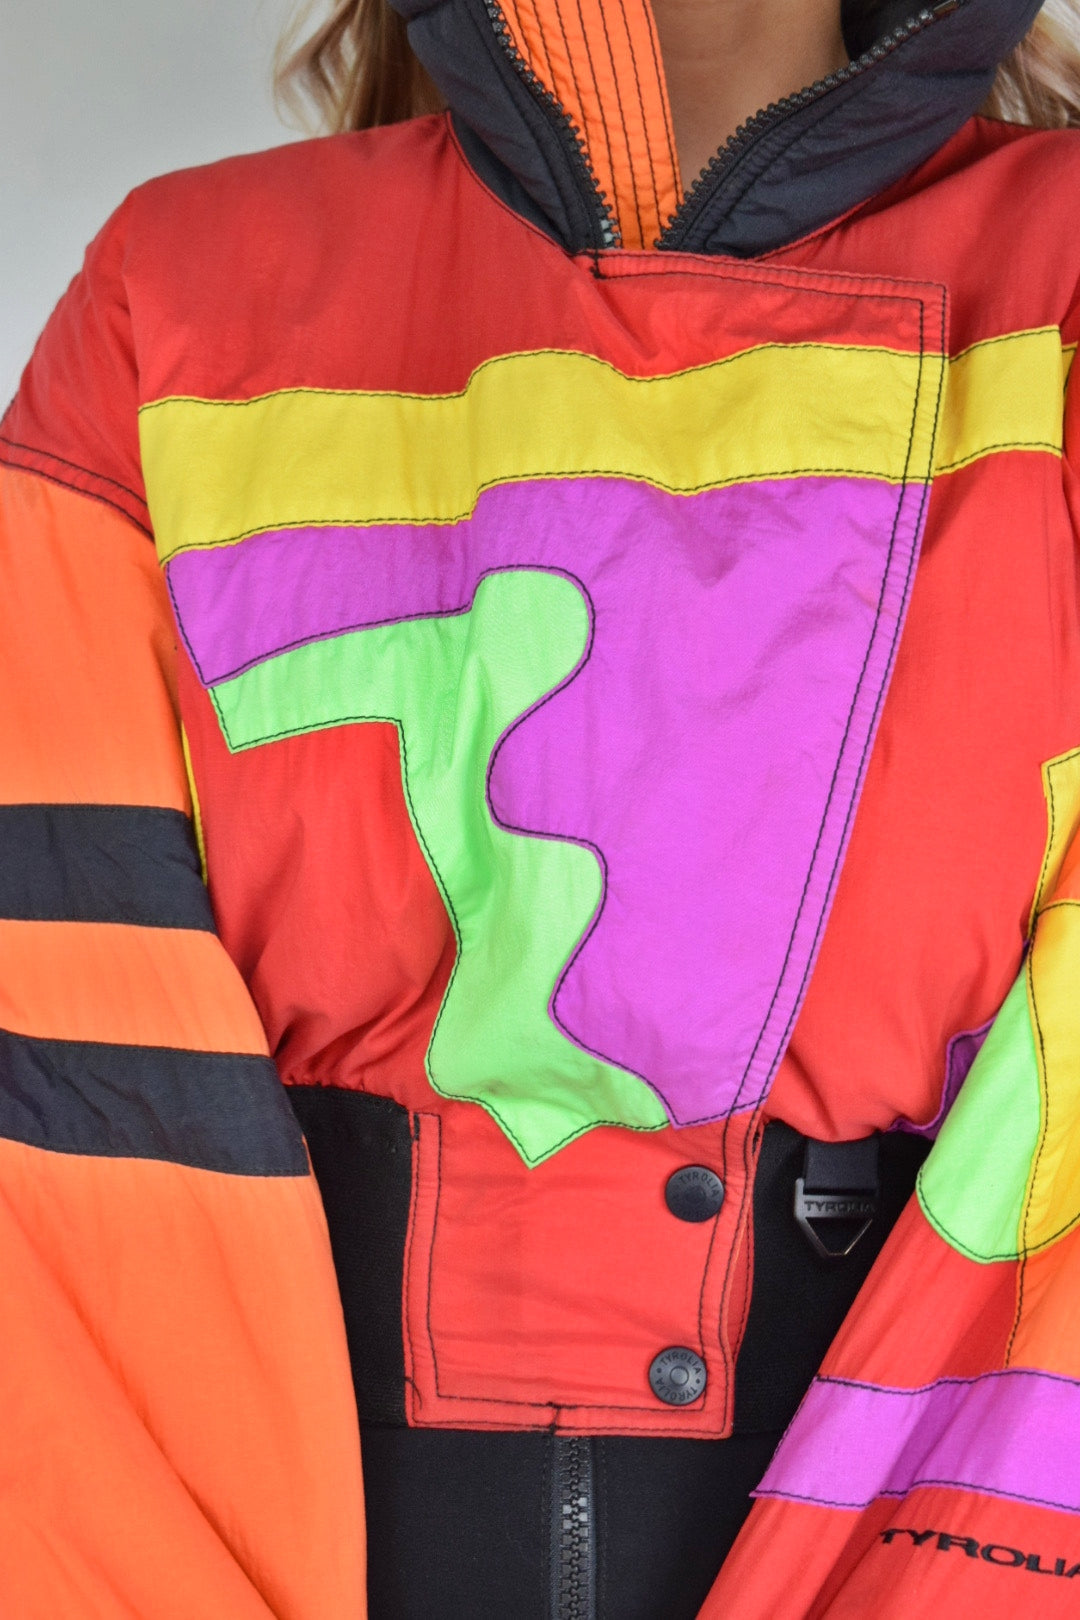 Vintage 80s Fluro Neon Ski Suit Jacket, Vintage Snow Suit Jacket, 80's  Snowsuit, 80's Snowboardingjacket, 80s Ski Jacket, 80s Jacket - Etsy